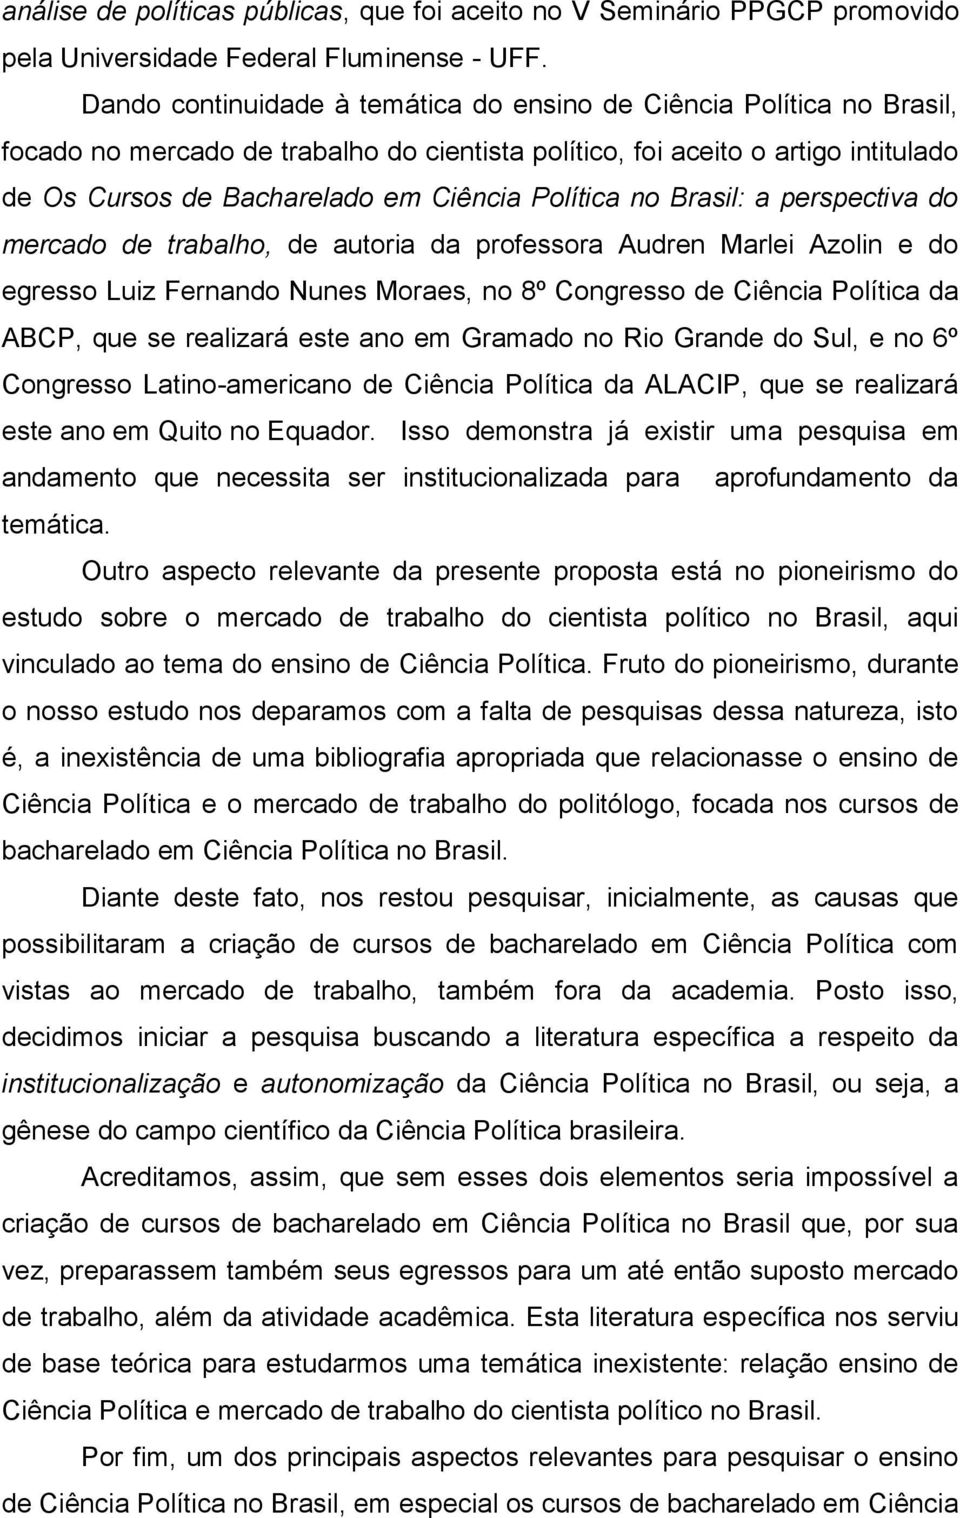 Política no Brasil: a perspectiva do mercado de trabalho, de autoria da professora Audren Marlei Azolin e do egresso Luiz Fernando Nunes Moraes, no 8º Congresso de Ciência Política da ABCP, que se